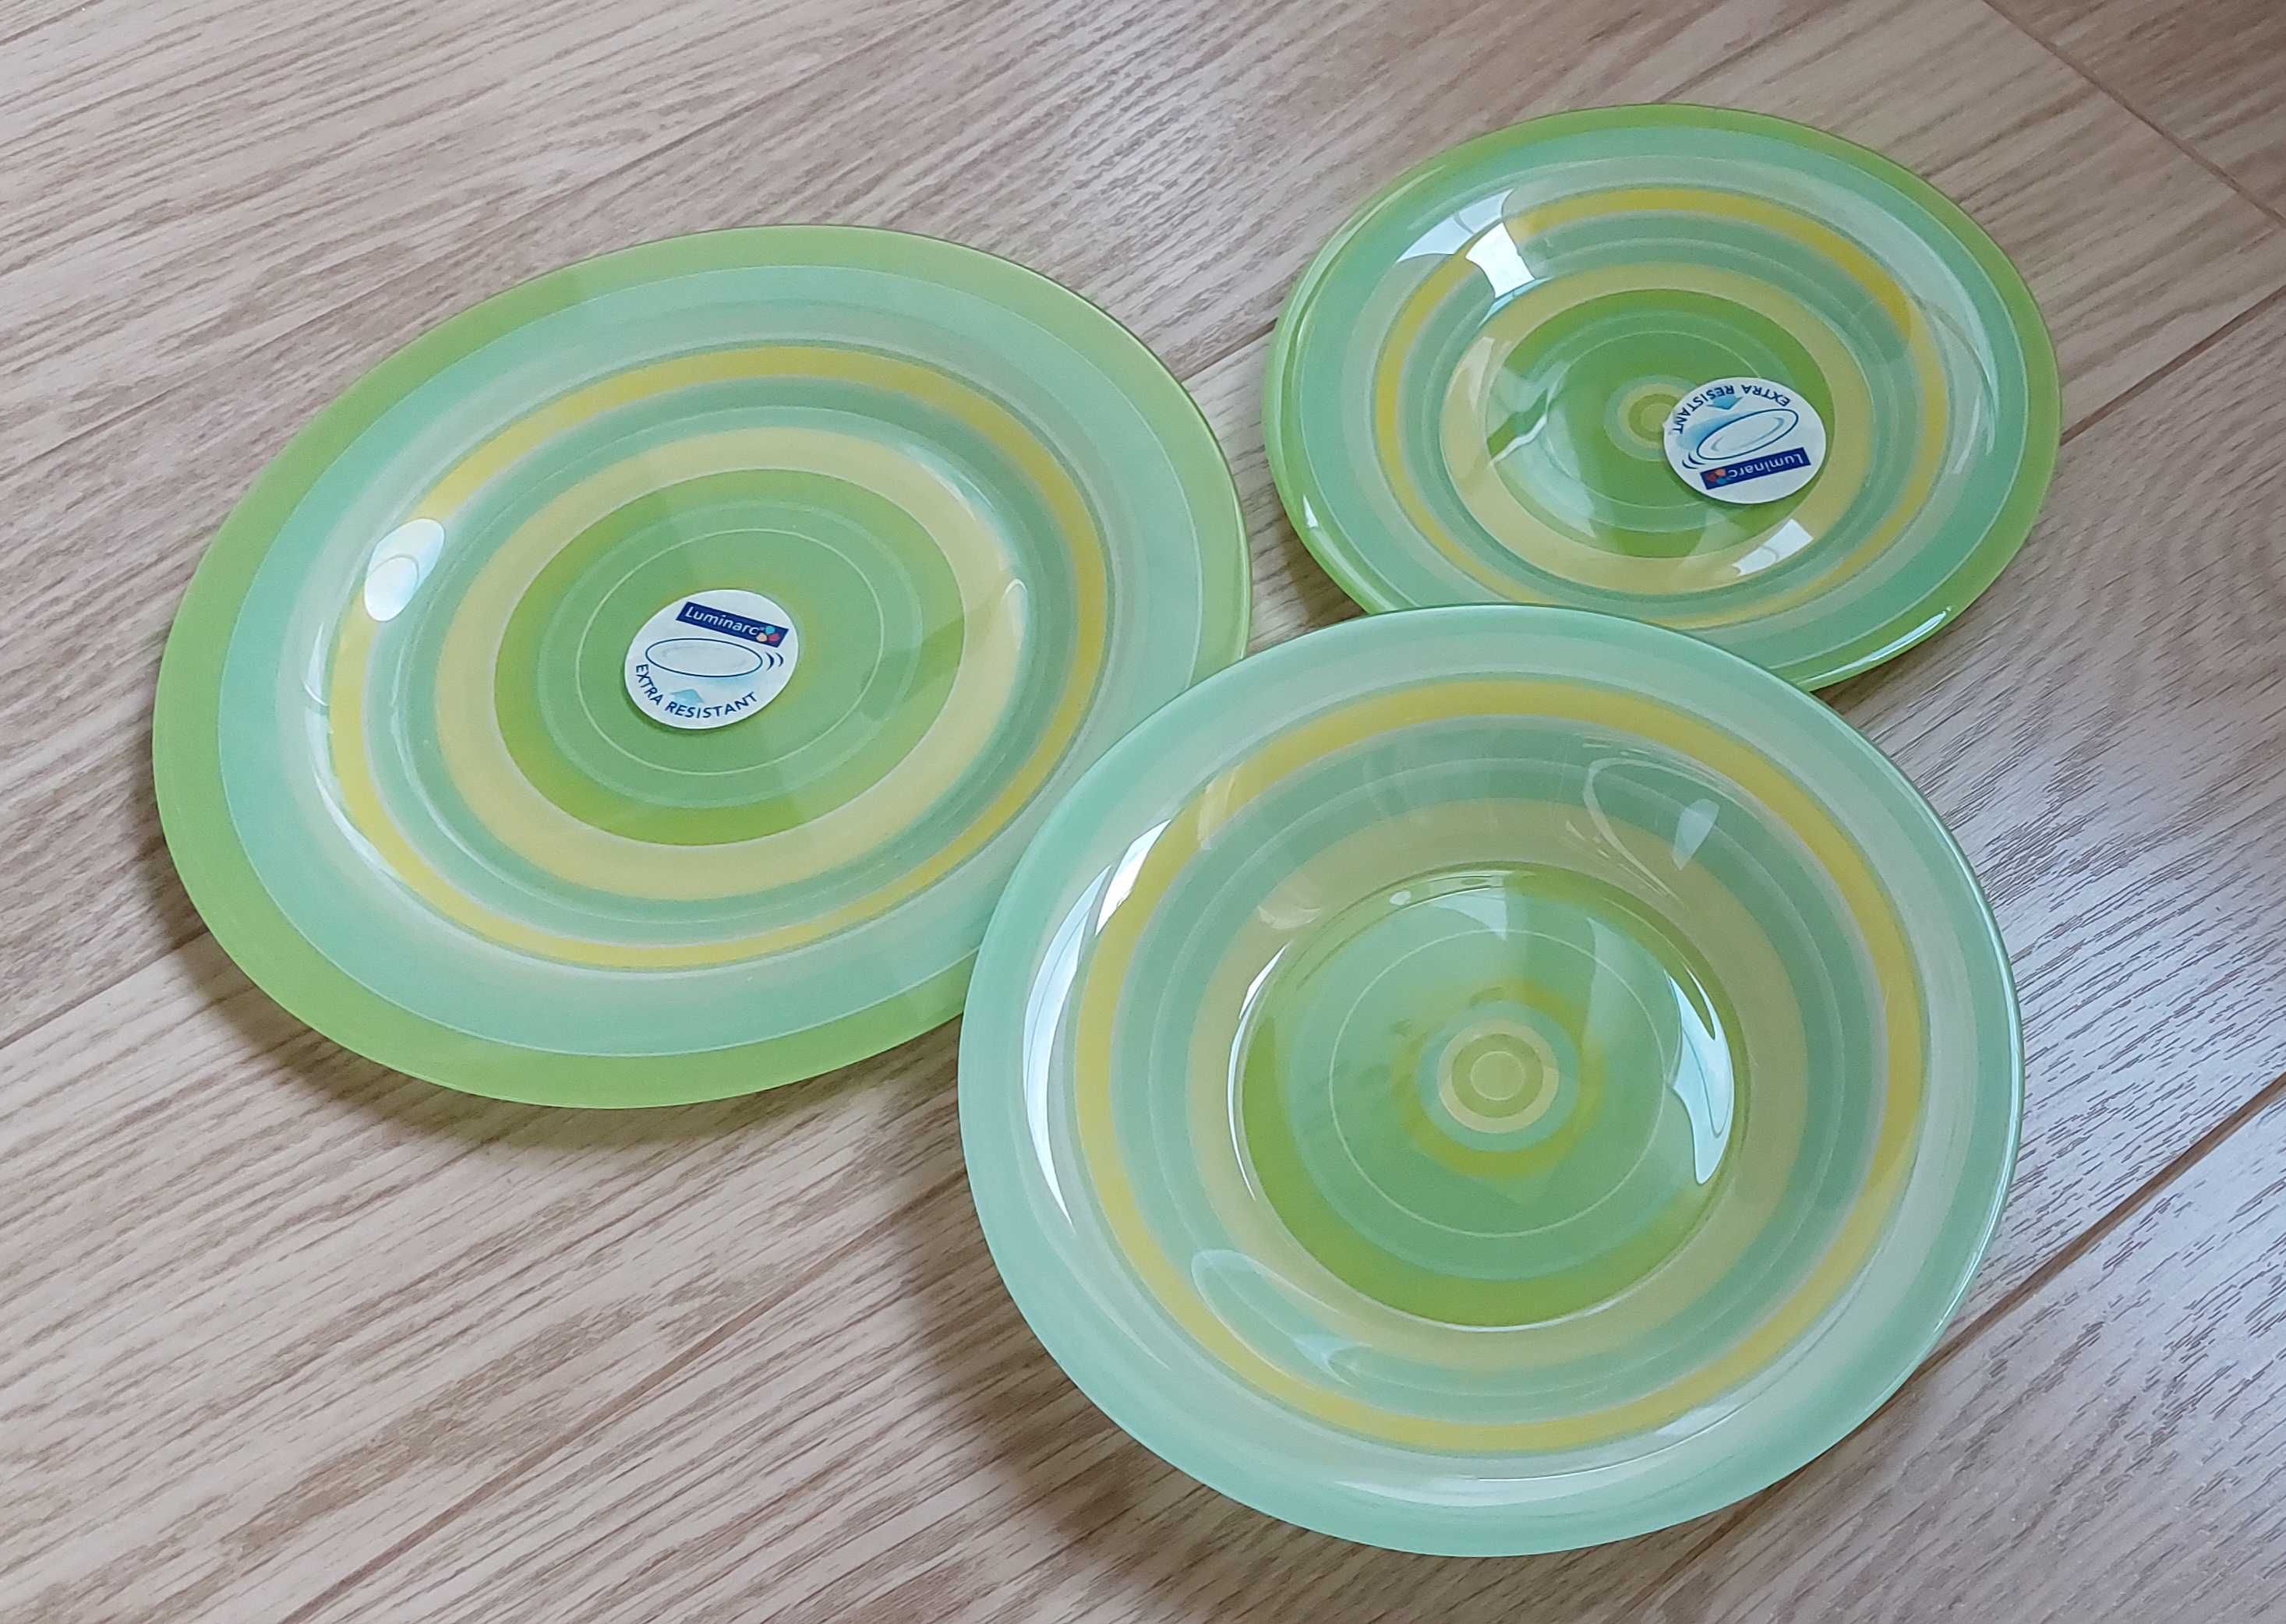 Новый набор тарелок Luminarc на 1 персону. Франция